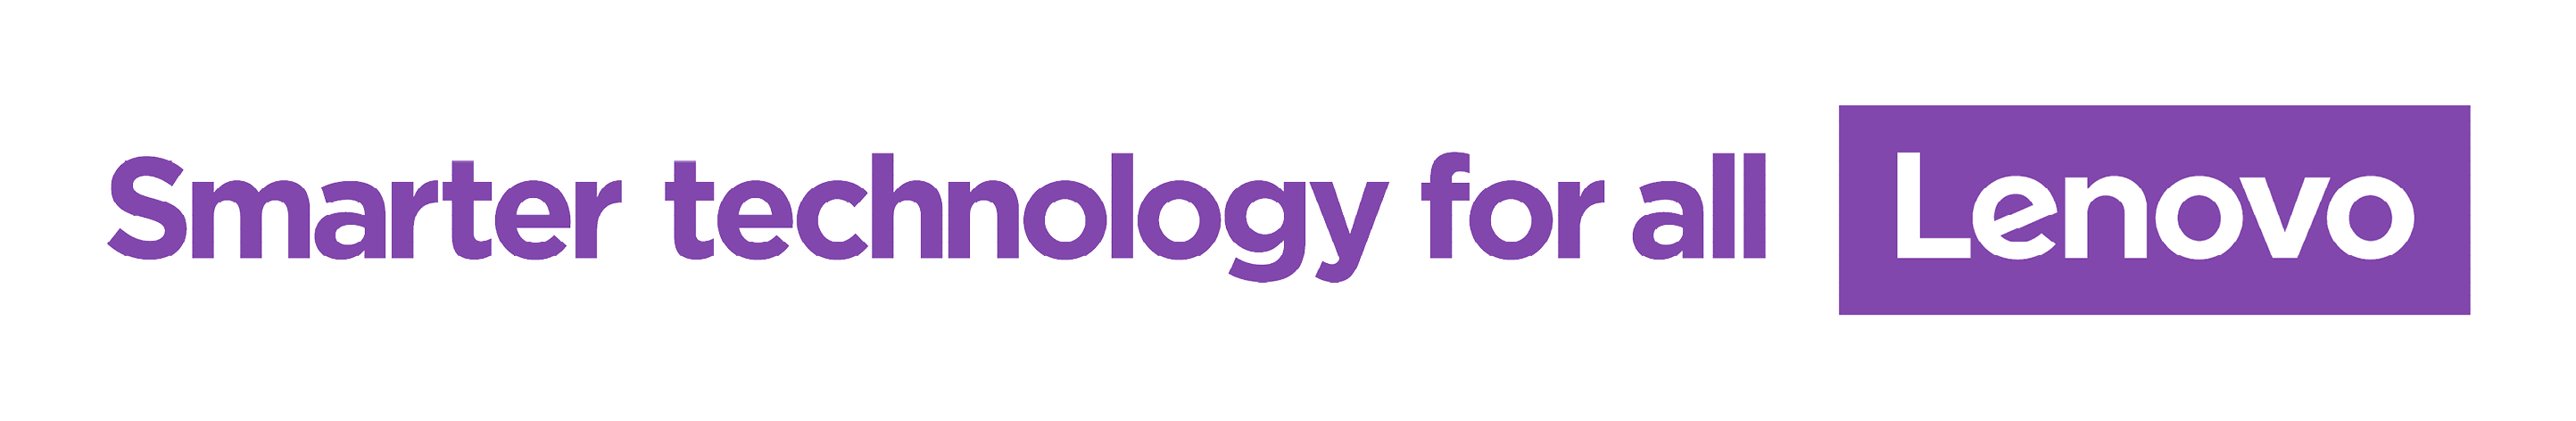 Footer Lenovo logo